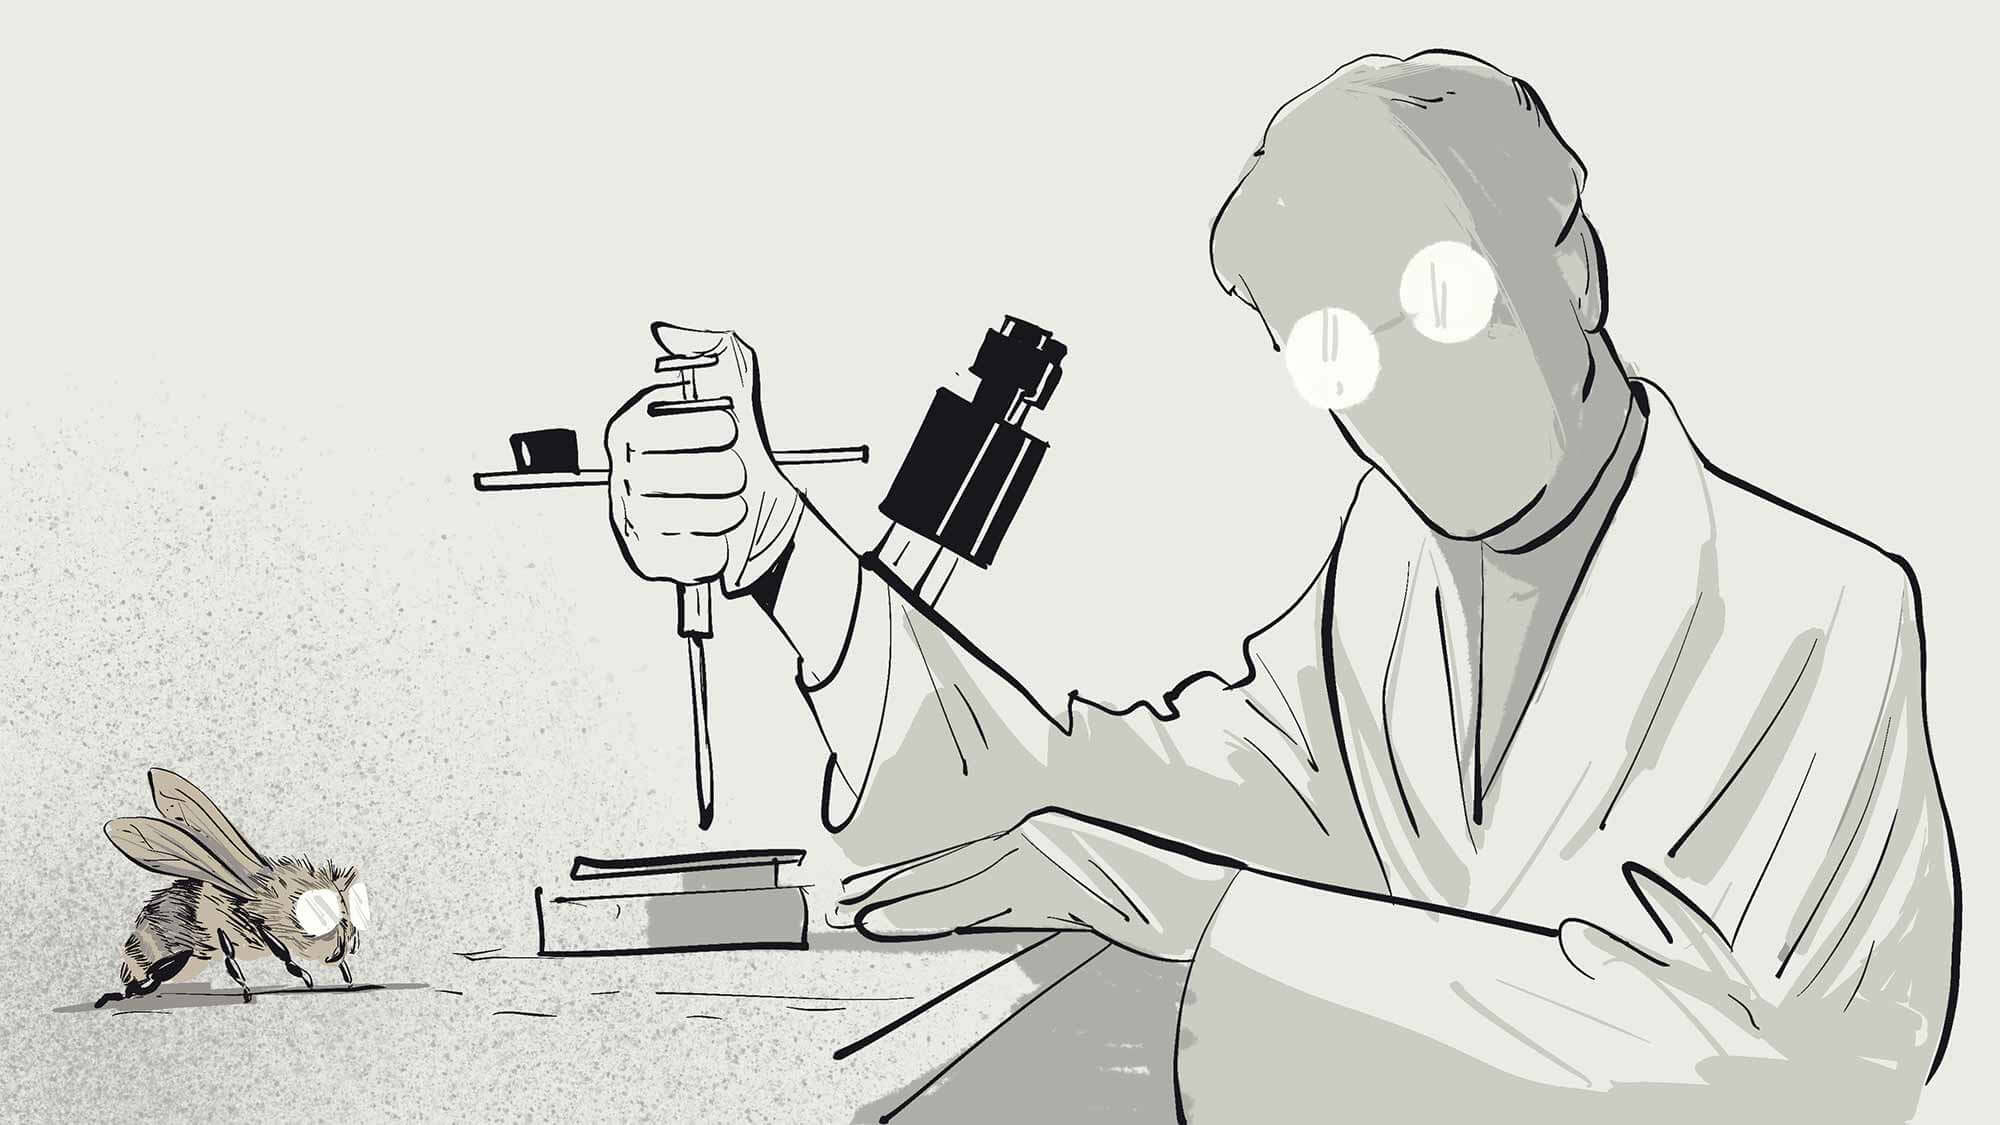 illustrierter wissenschaftler im labor